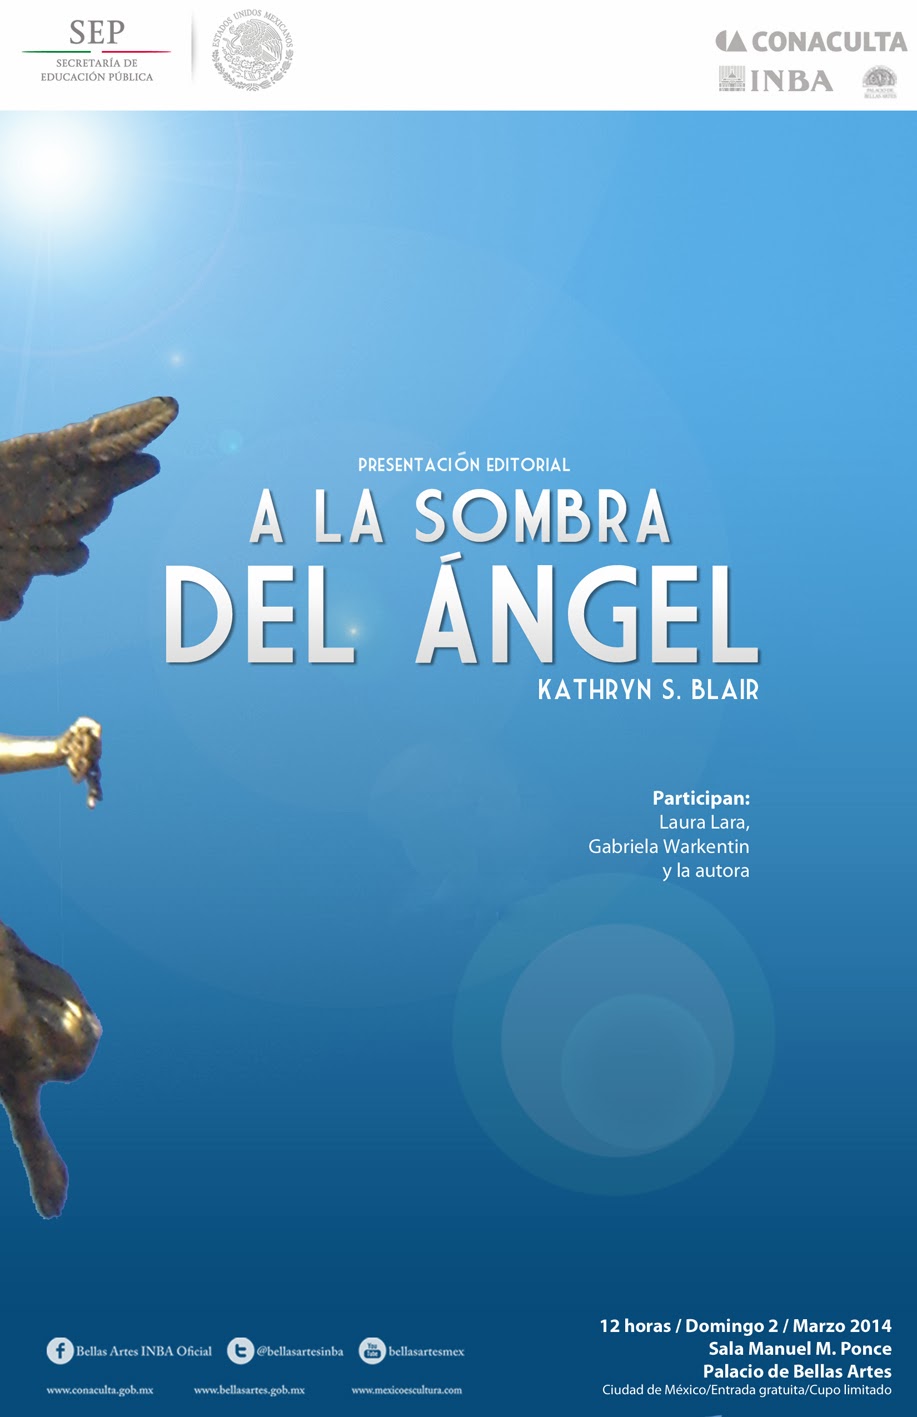 Presentan el libro "A la sombra del Ángel" en formato electrónico